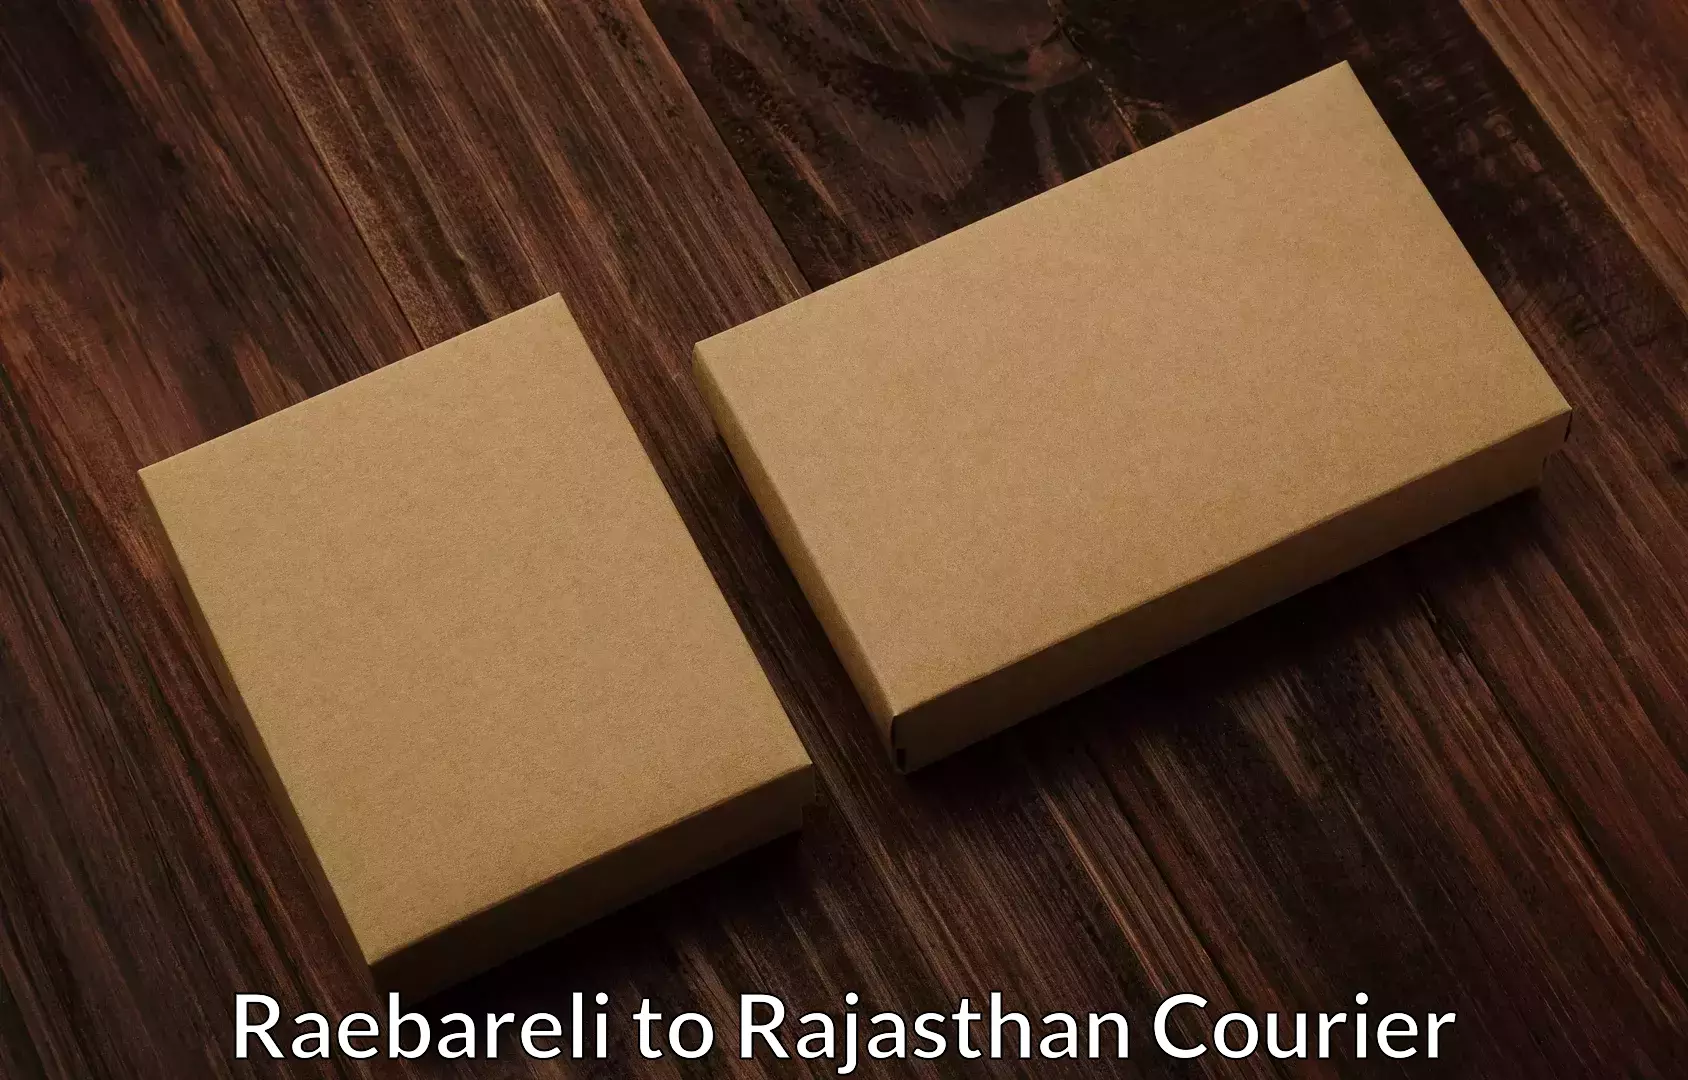 Furniture delivery service in Raebareli to Hanumangarh